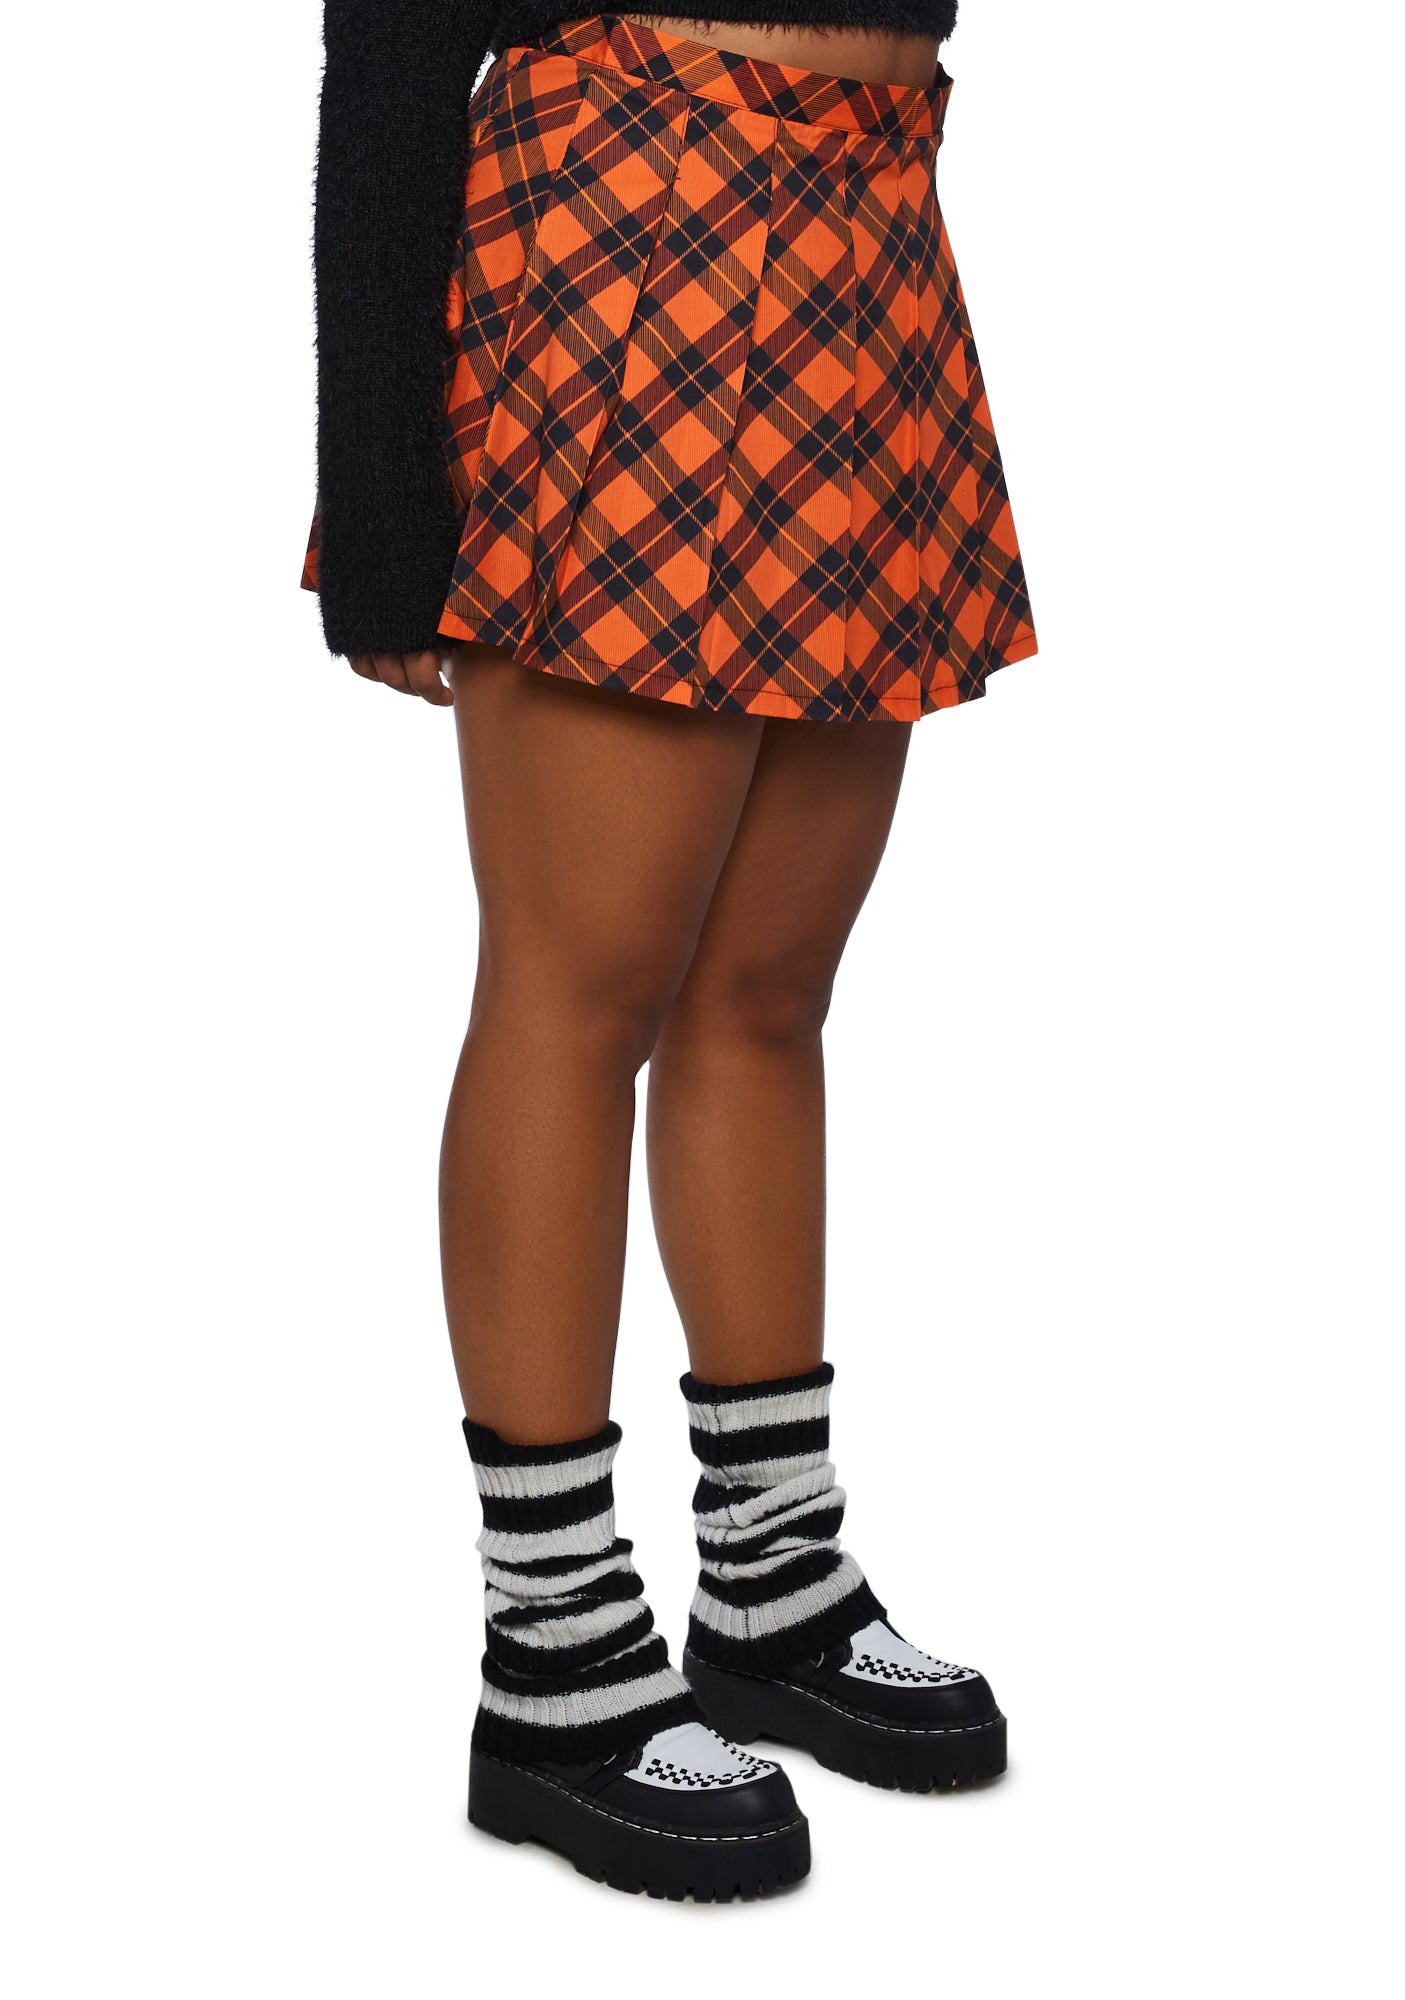 Plus Size Halloween Pleated Plaid Mini Skirt Orange Black – Dolls Kill